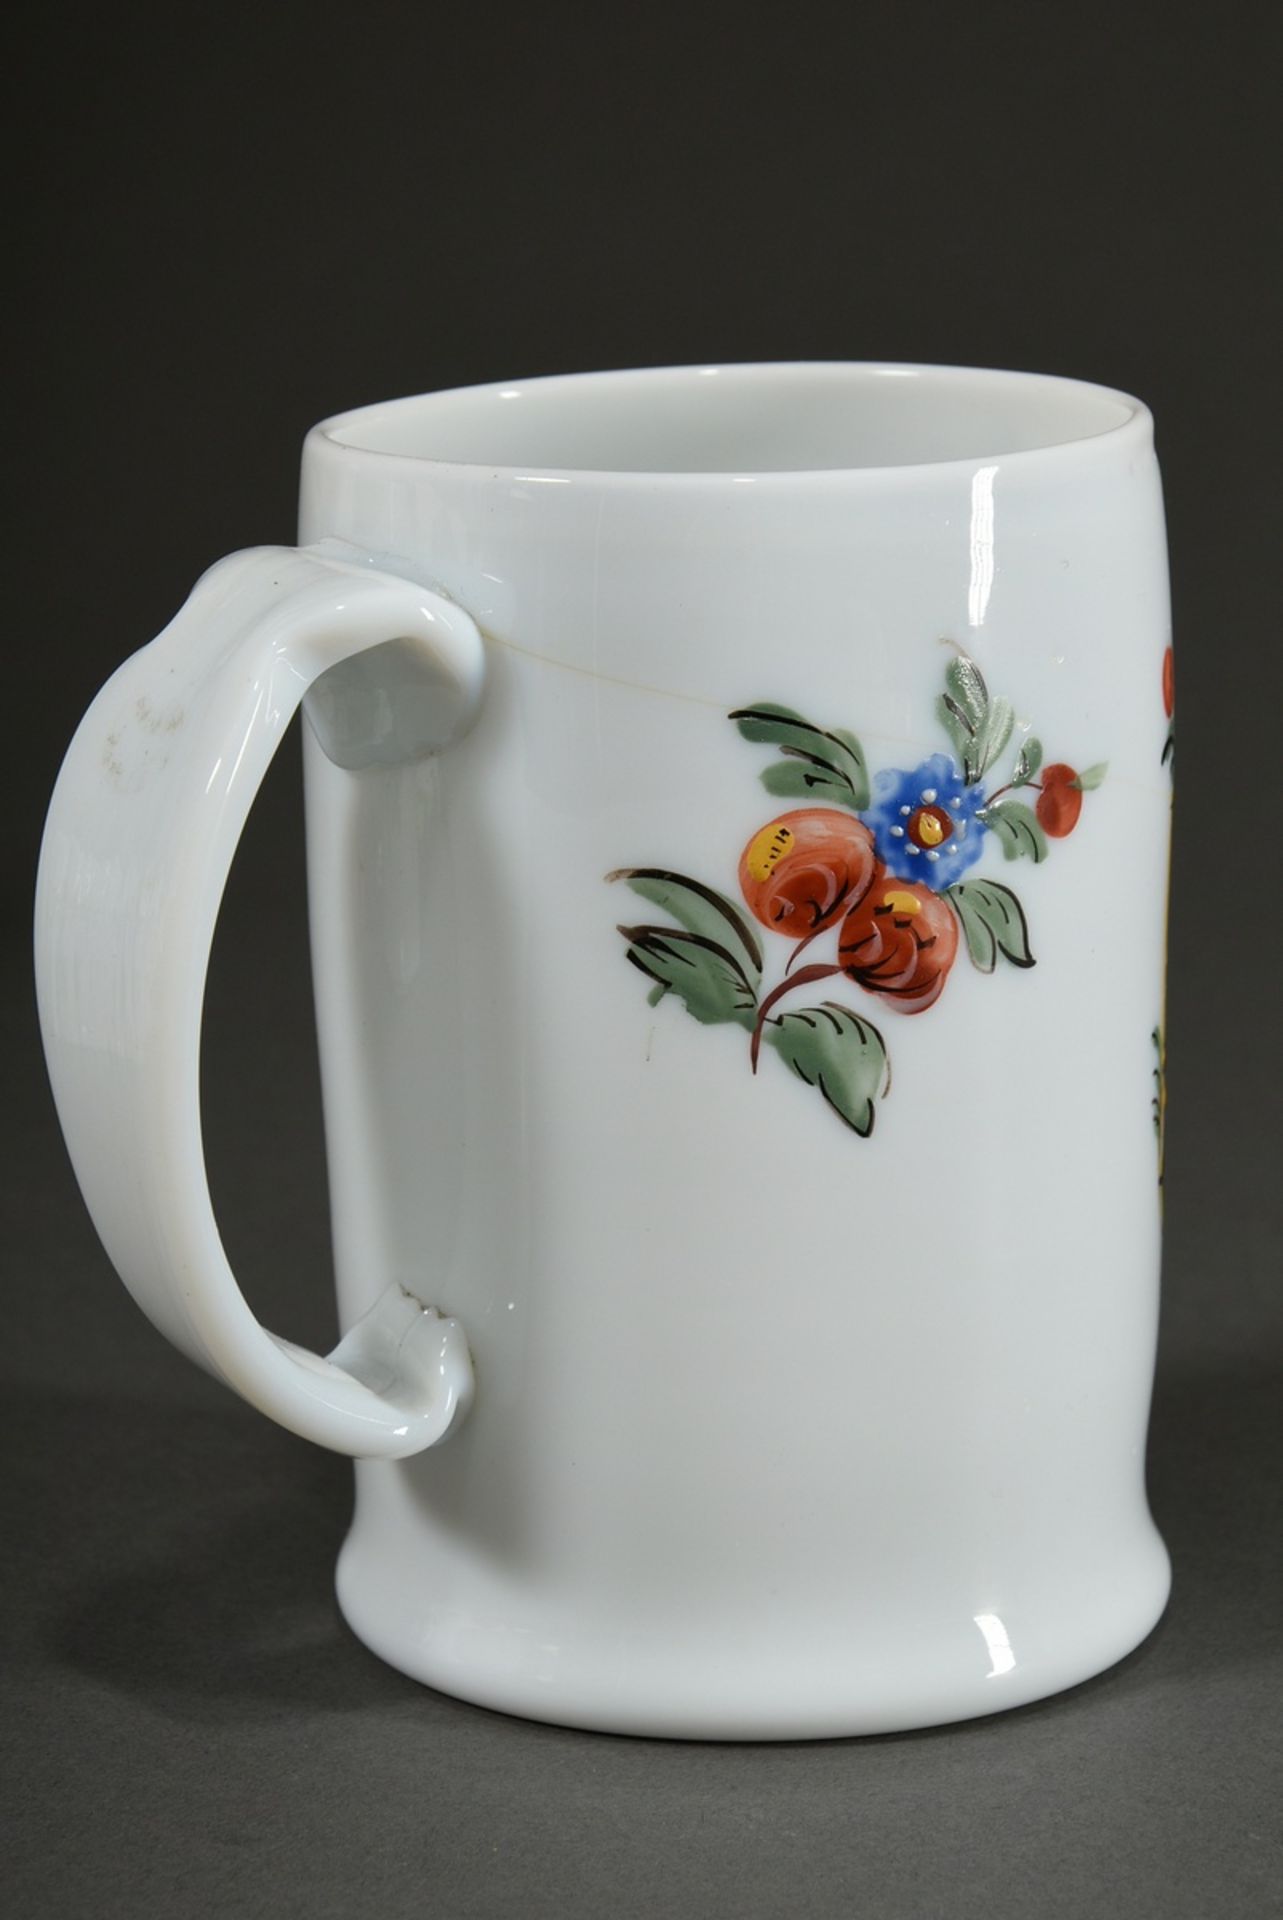 Freimaurer Milchglas Walzenkrug mit farbiger Emaille Malerei in floral verzierter Kartusche, Bandhe - Bild 3 aus 4